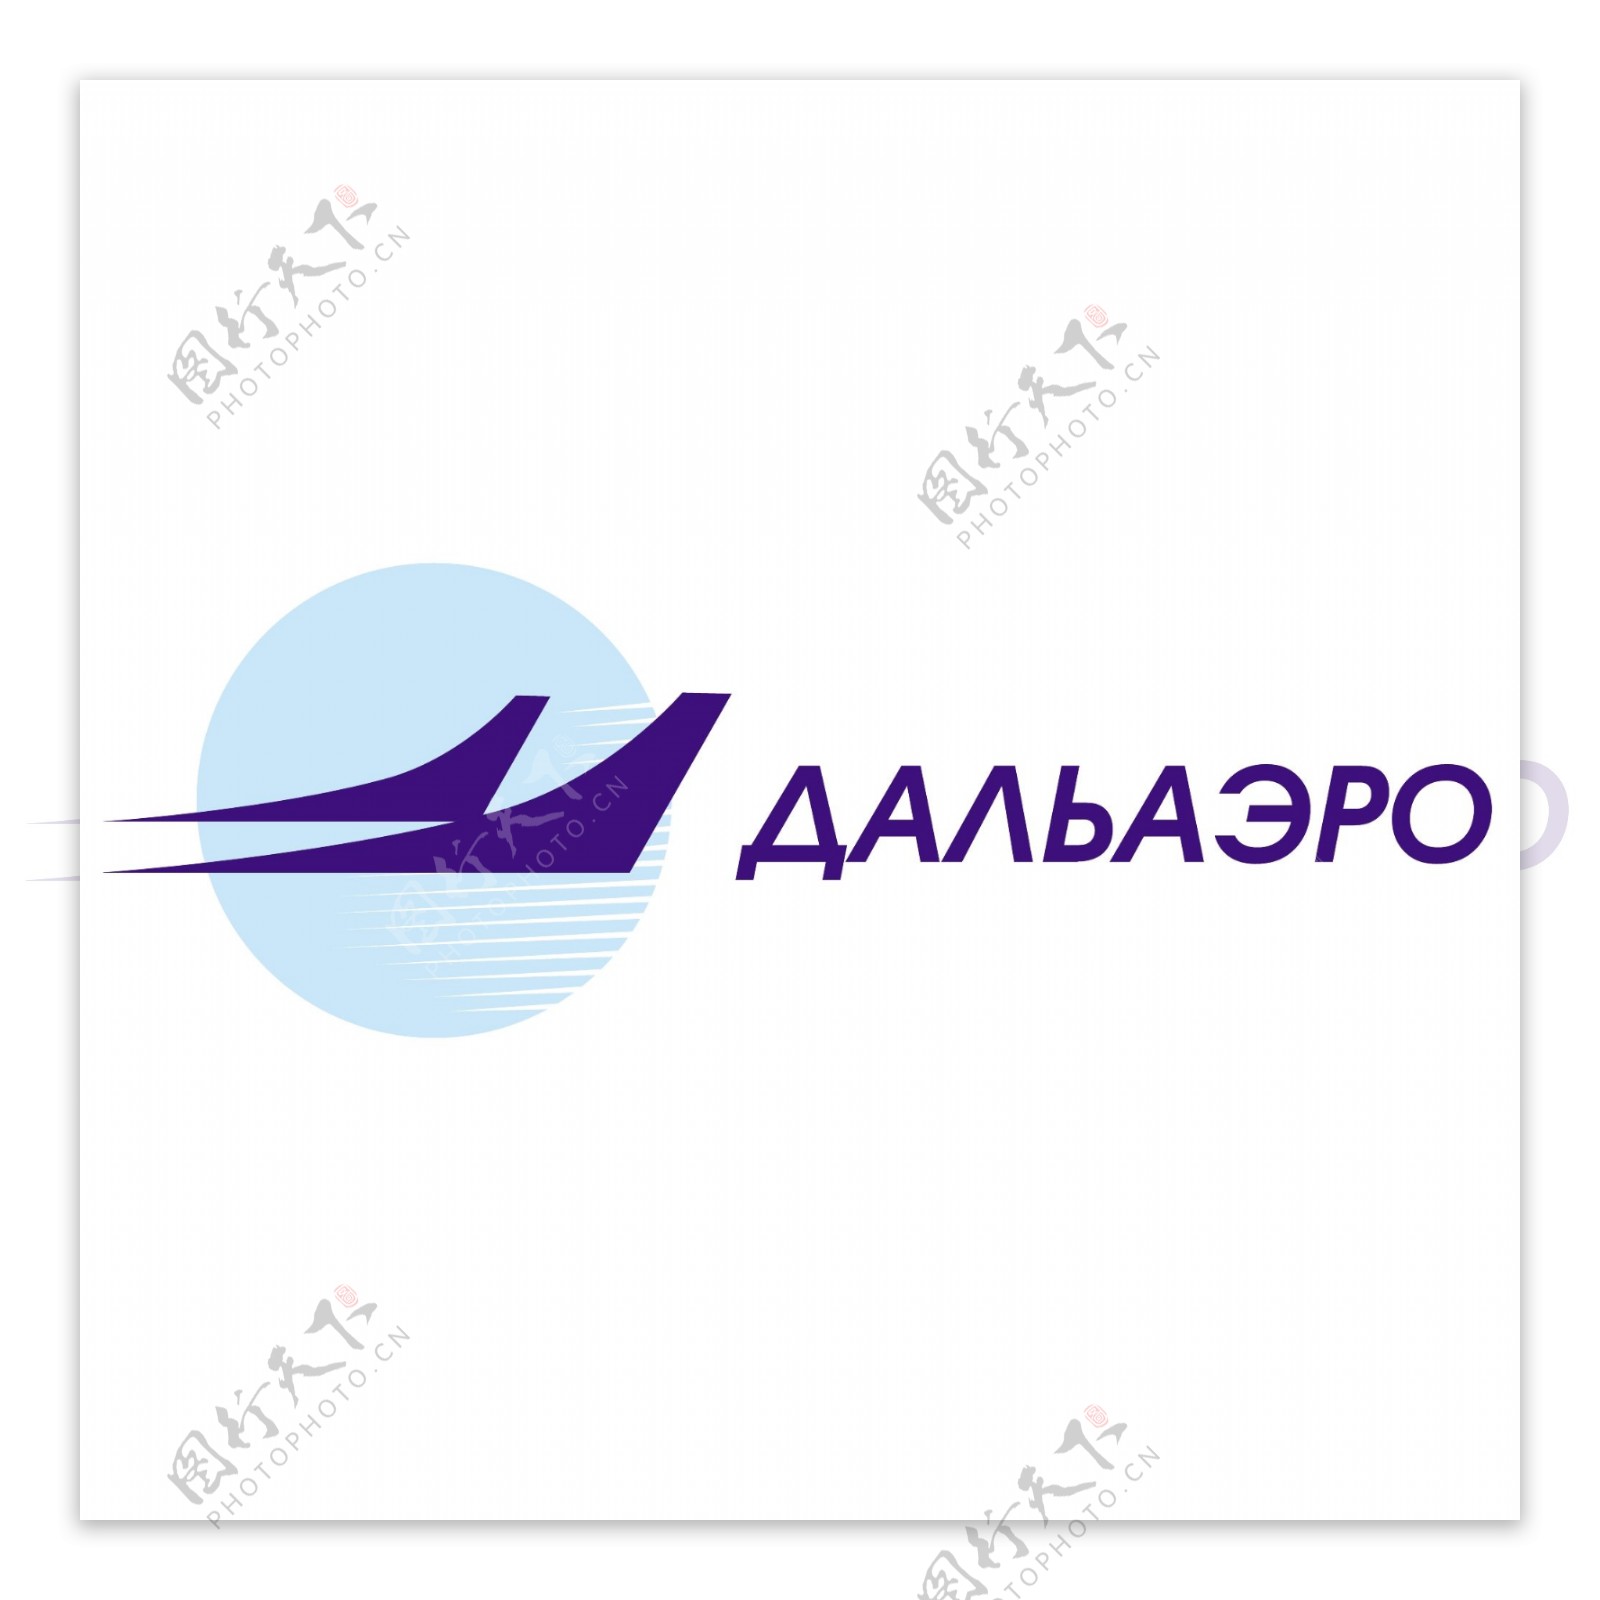 创意飞行航空标志logo设计